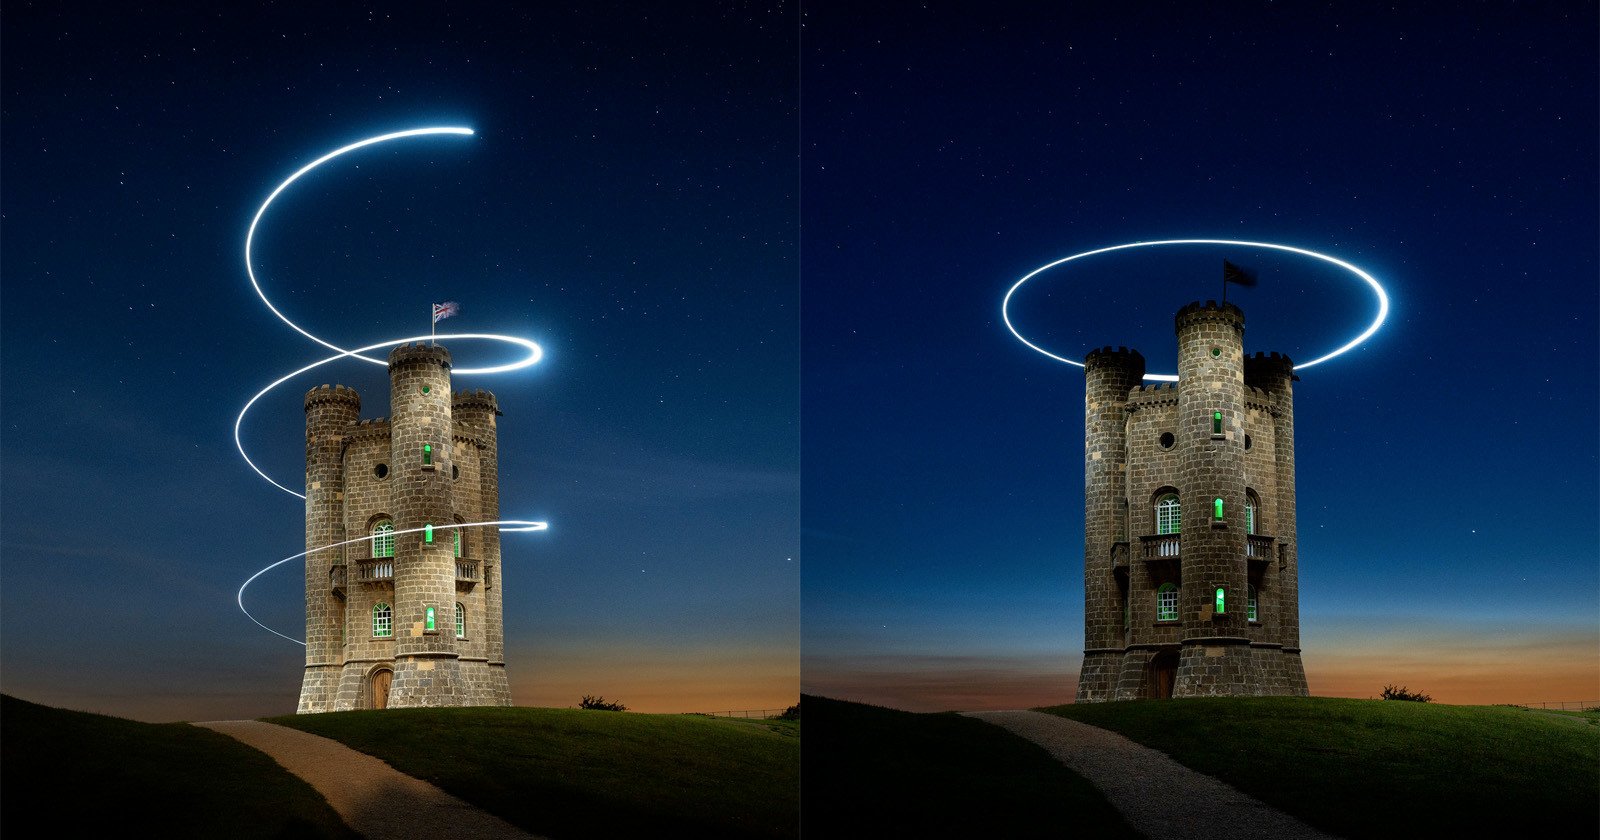 Drone-Mounted LED Gorgeously Illuminates Photo of a British Tower